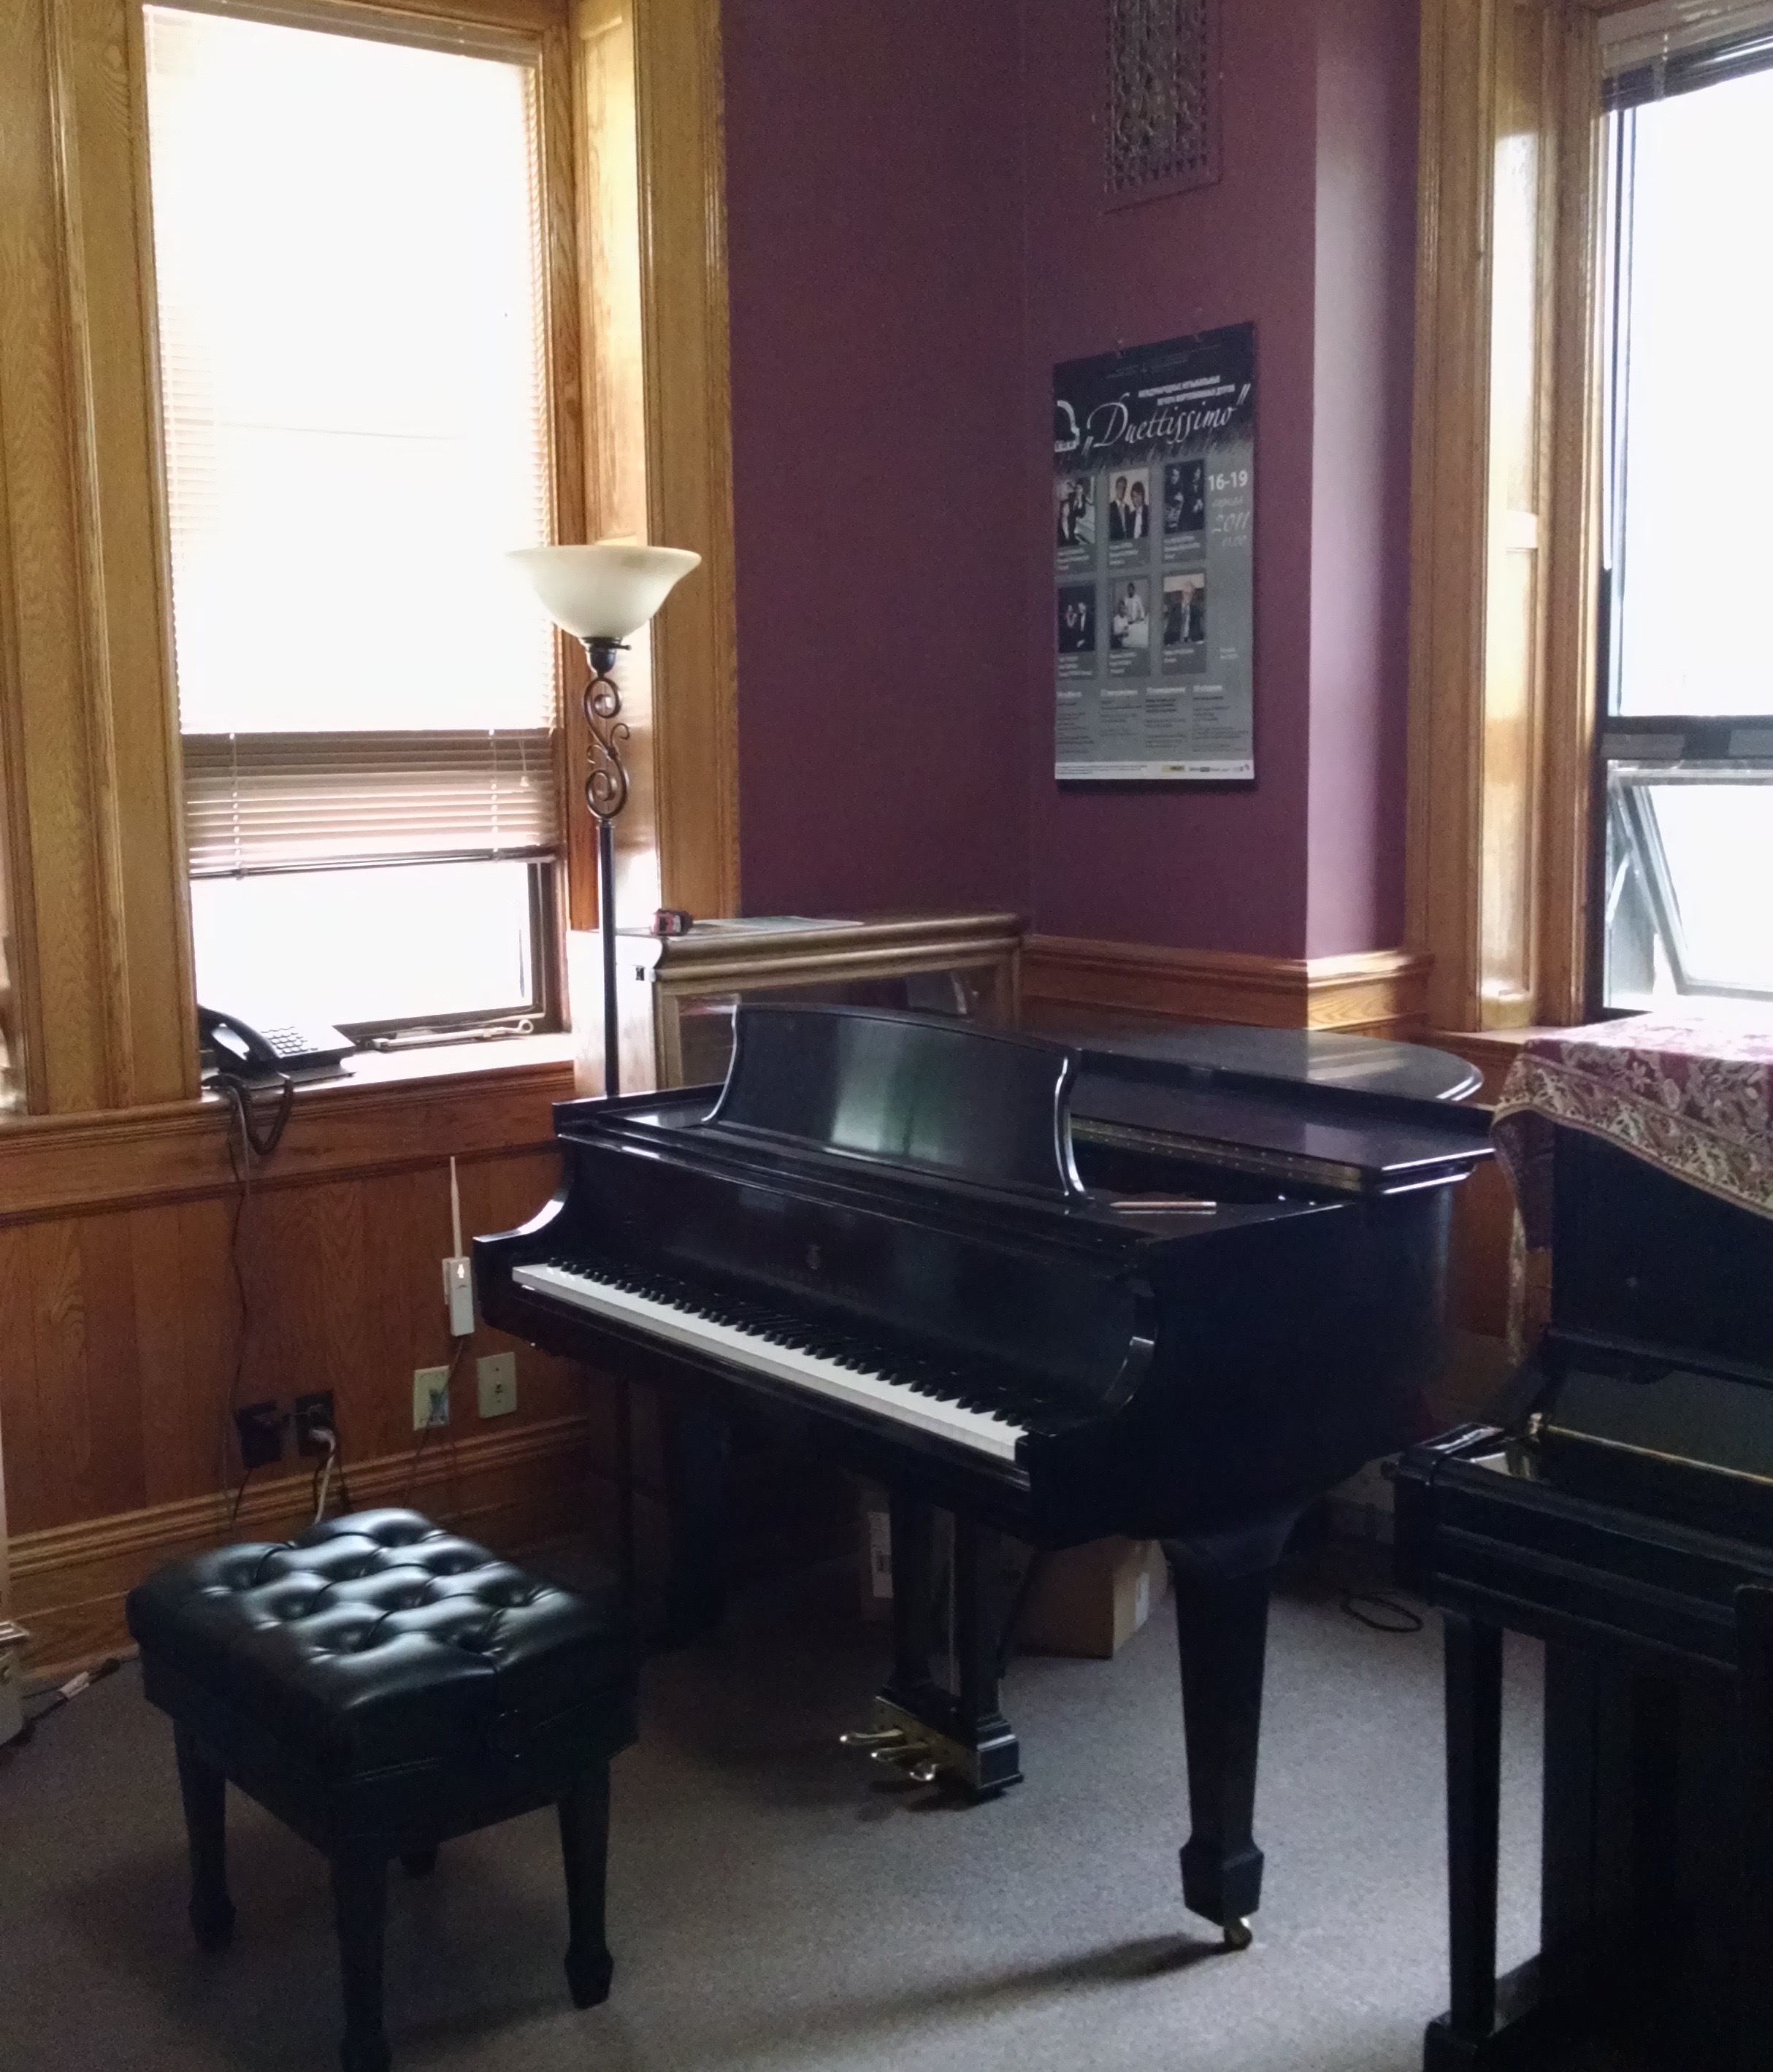 Deux pianos et un banc installés côte-à-côte dans une petite salle peinte de couleur bourgogne, avec de grandes fenêtres ; lambrissé, porte et plinthe en chêne ; tapis mur à mur.